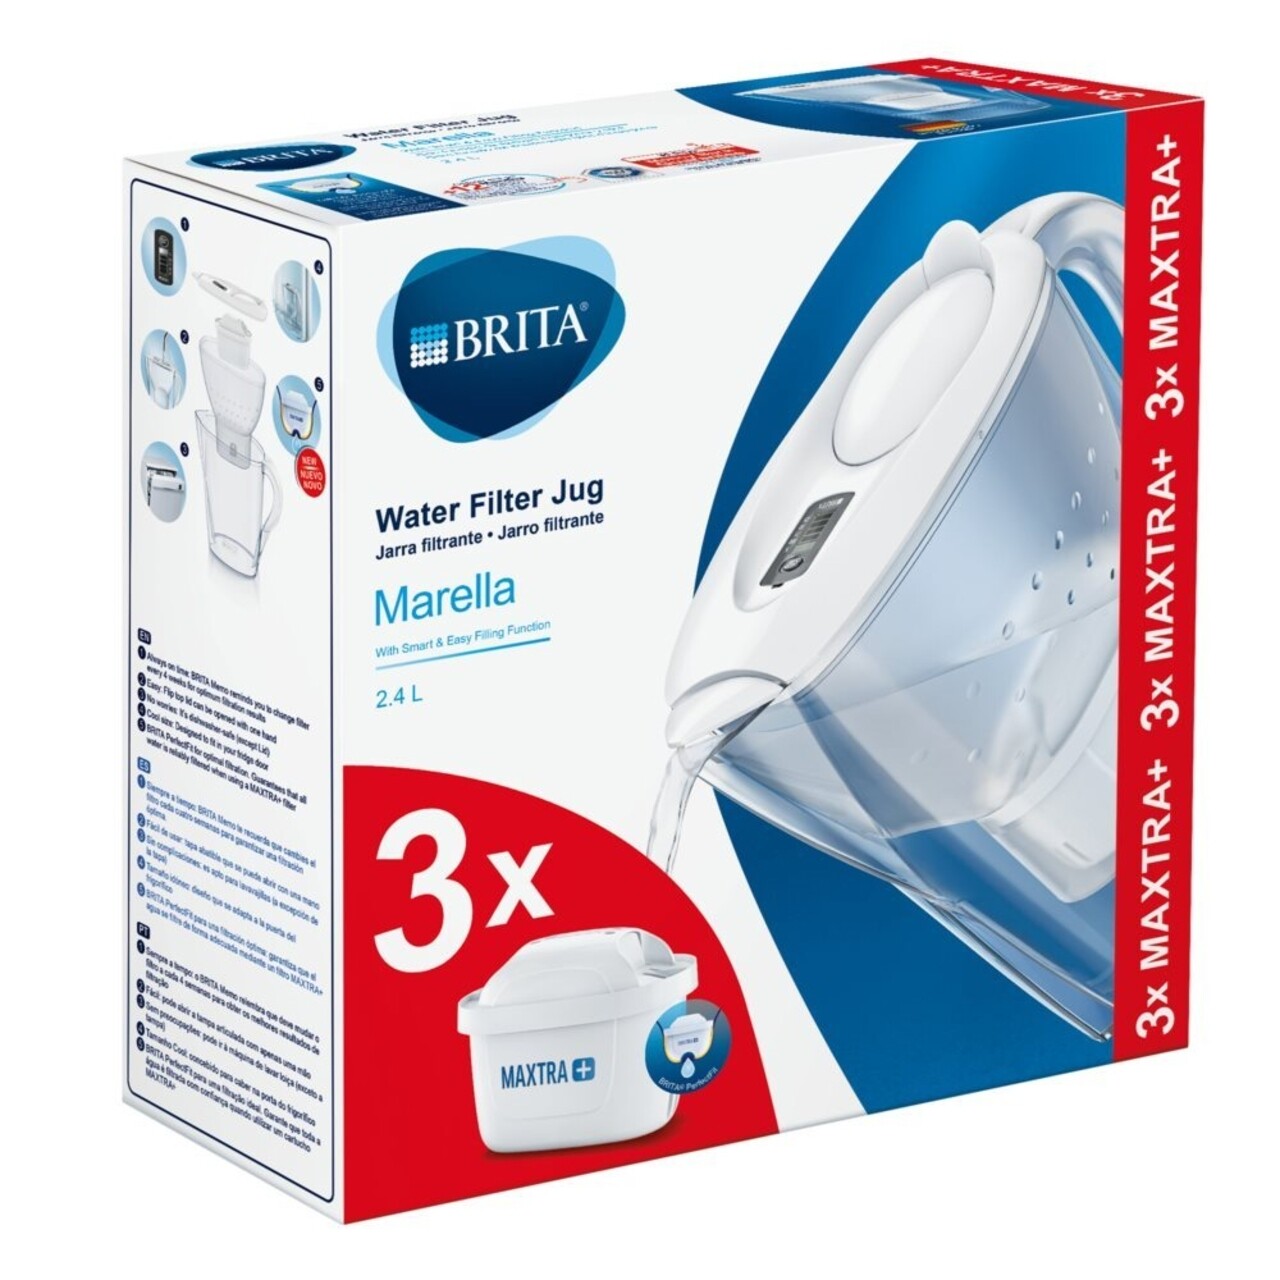 Brita Szűrőpohár, Marella MAXTRA +, Műanyag, 2,4 L, Starter Pack + 3 Szűrő, Fehér